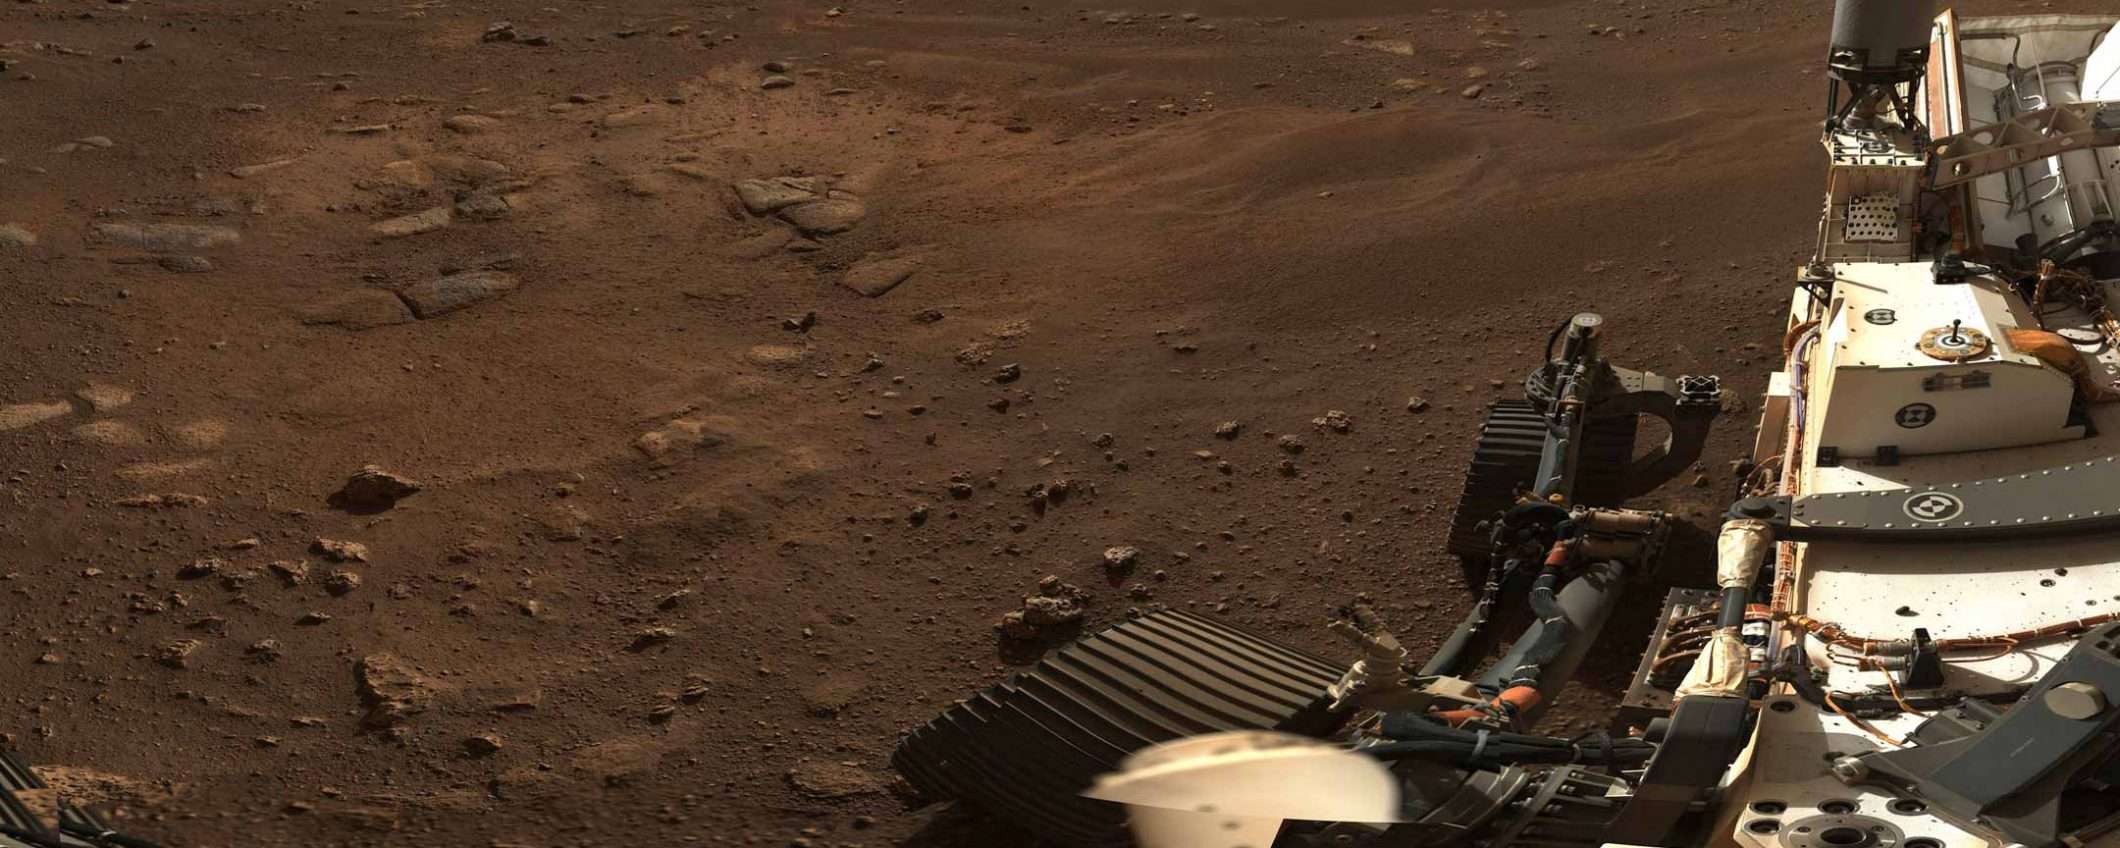 Perseverance ci mostra il panorama di Marte